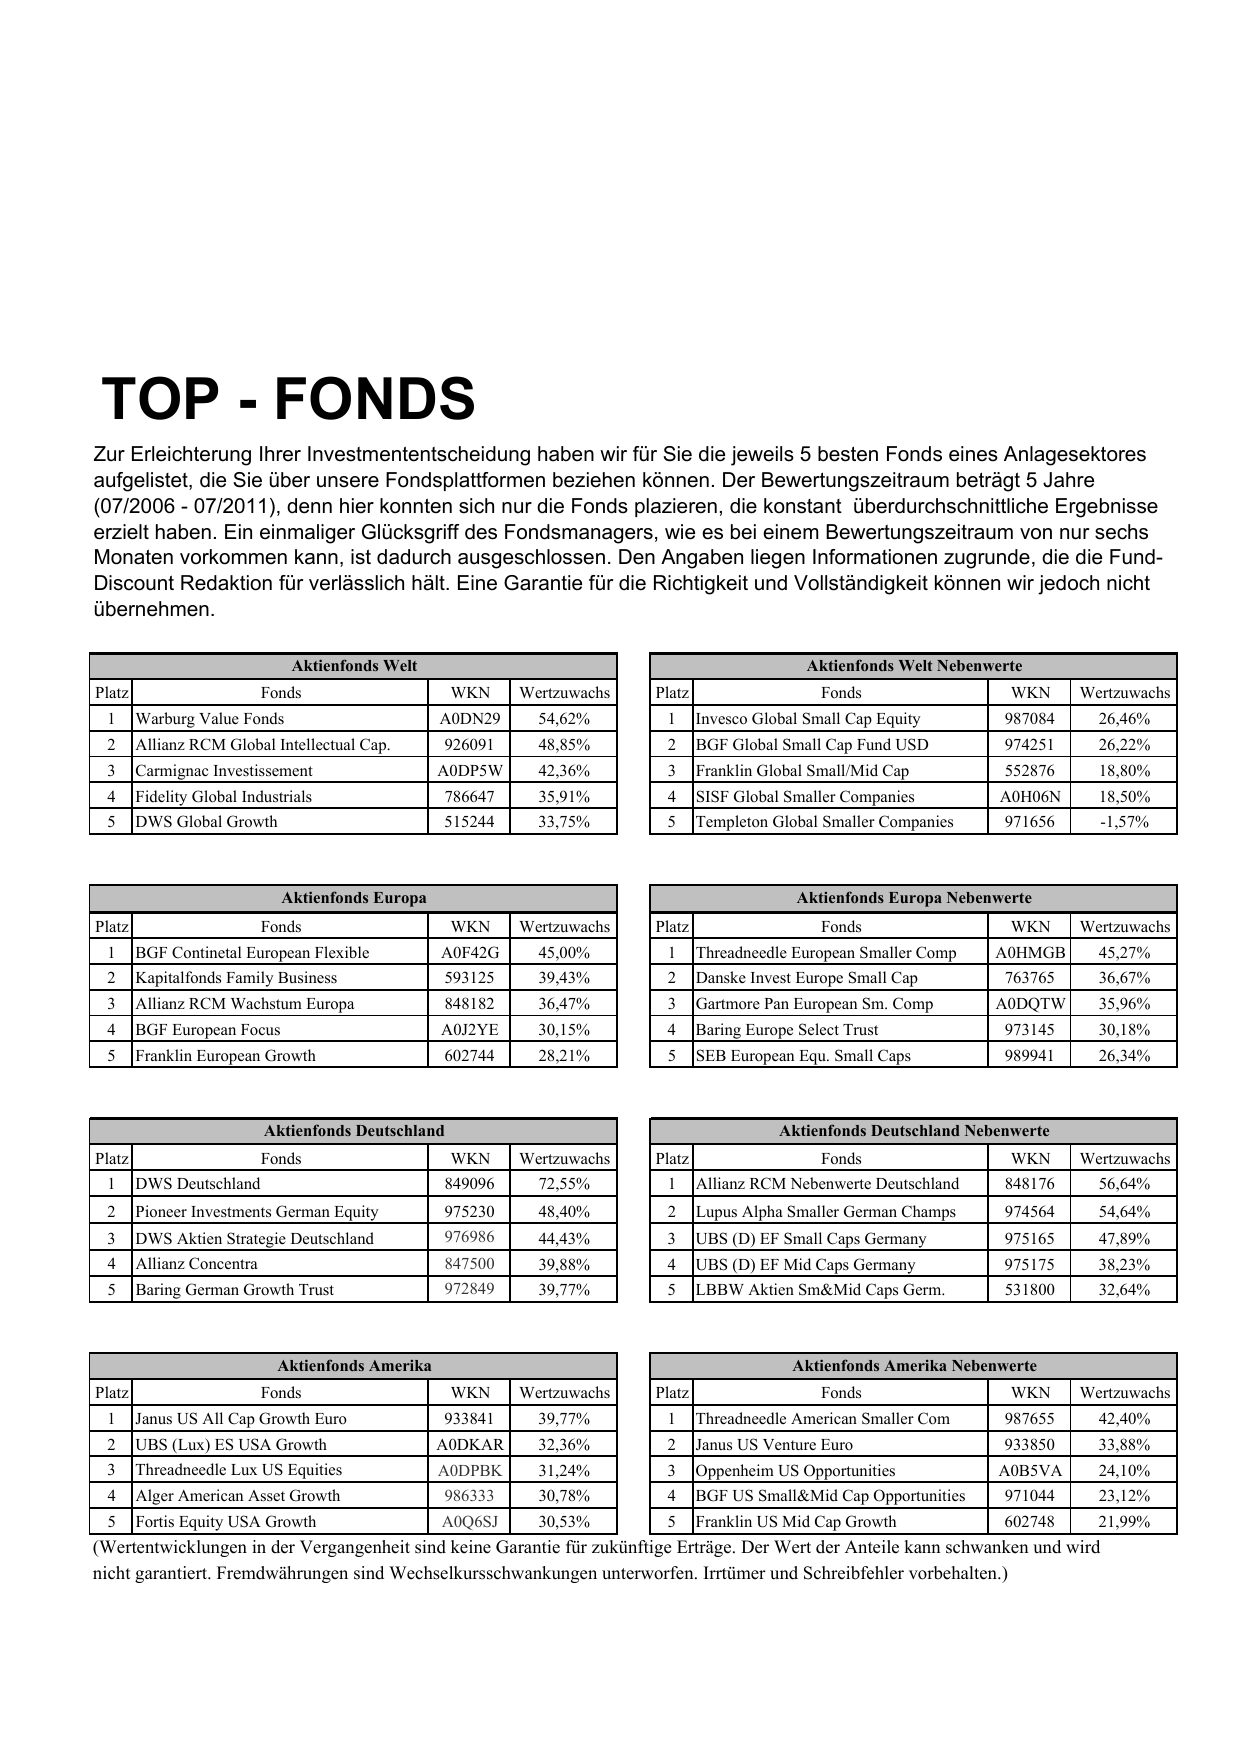 Top Fonds